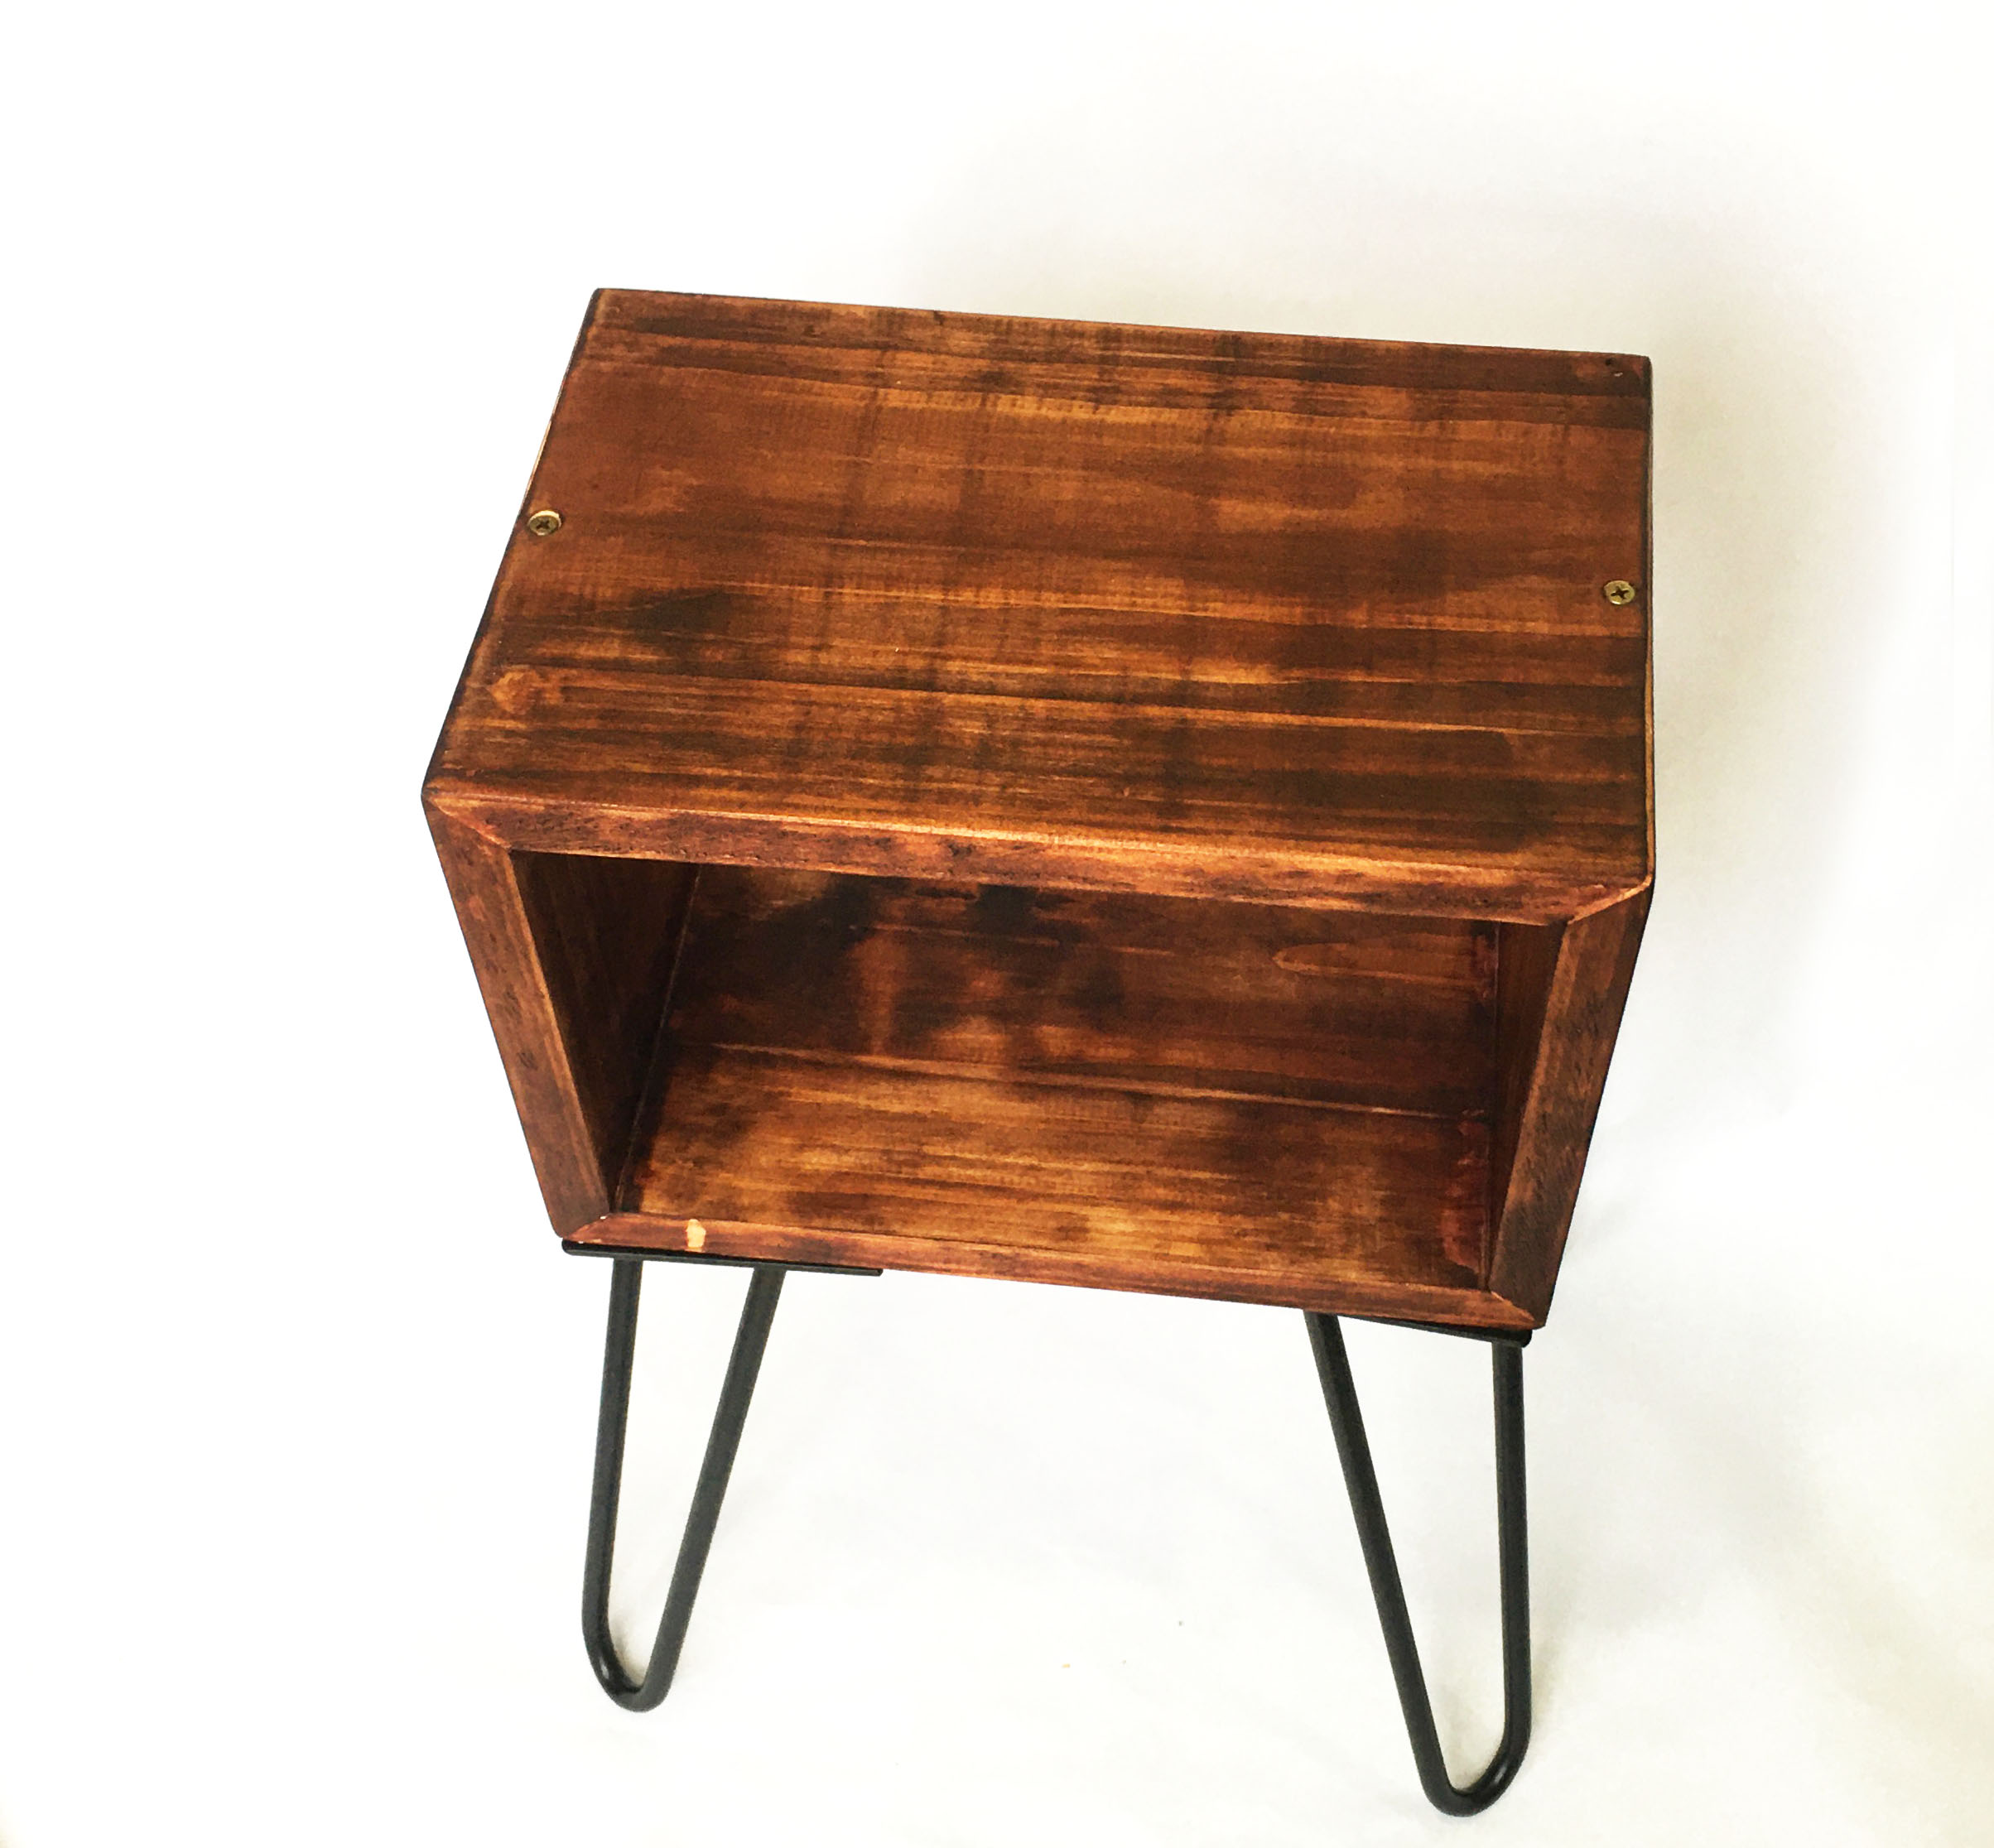 Bàn gỗ thông D30xR20xC50cm, 4 chân sắt làm bàn kê đầu giường decor bàn trà (gỗ thô hoặc sơn màu vintage cổ điển - 5 màu lựa chọn)